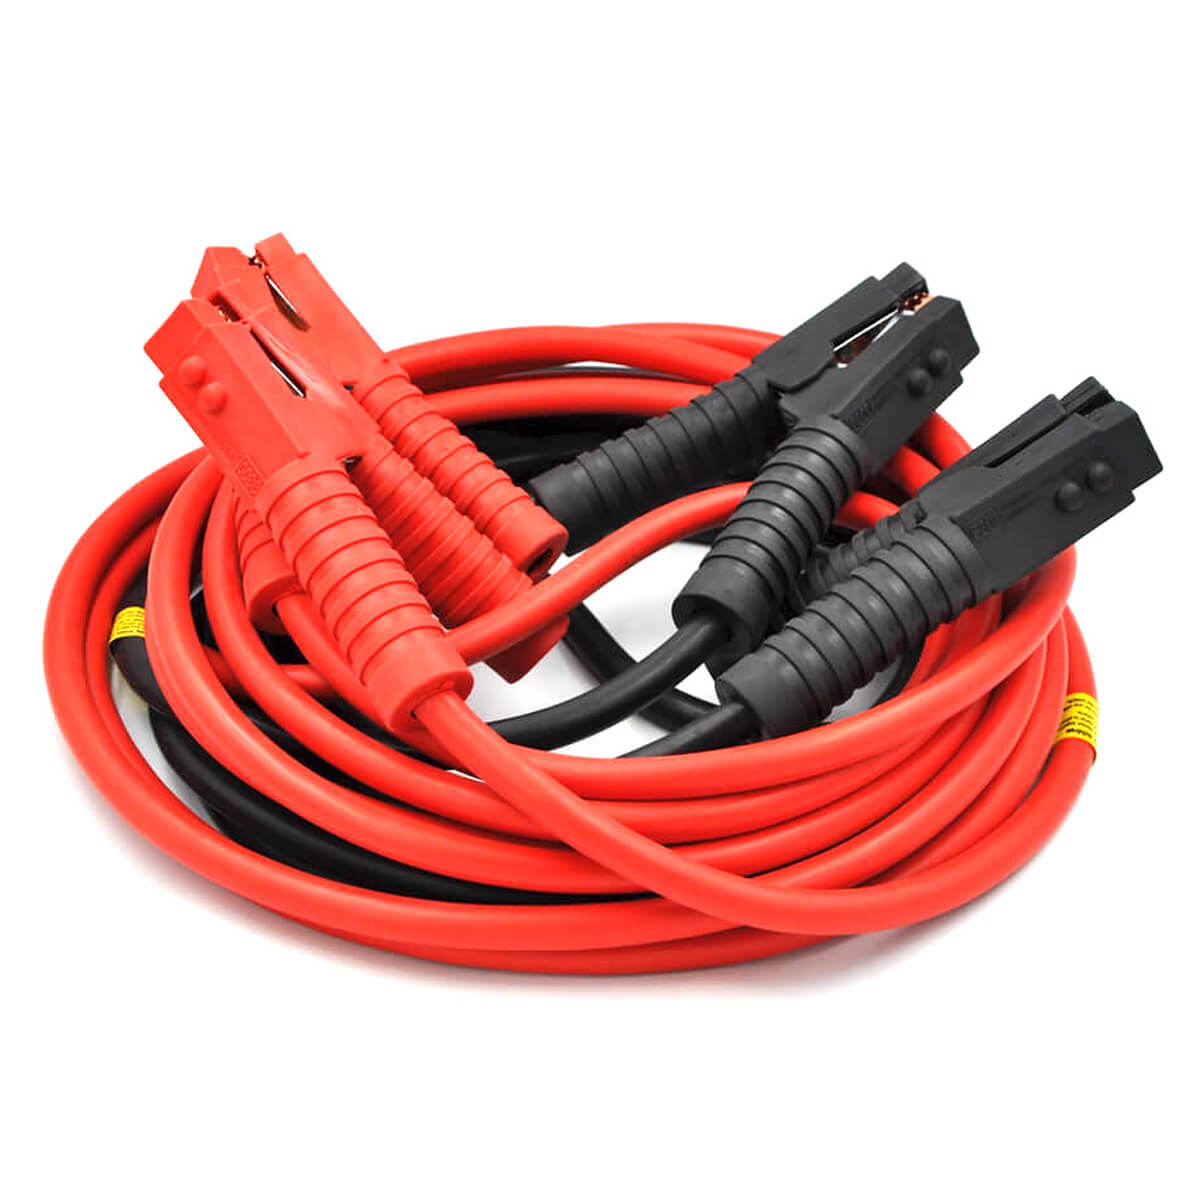 xincol-2500a-car-jumper-cables-16ft